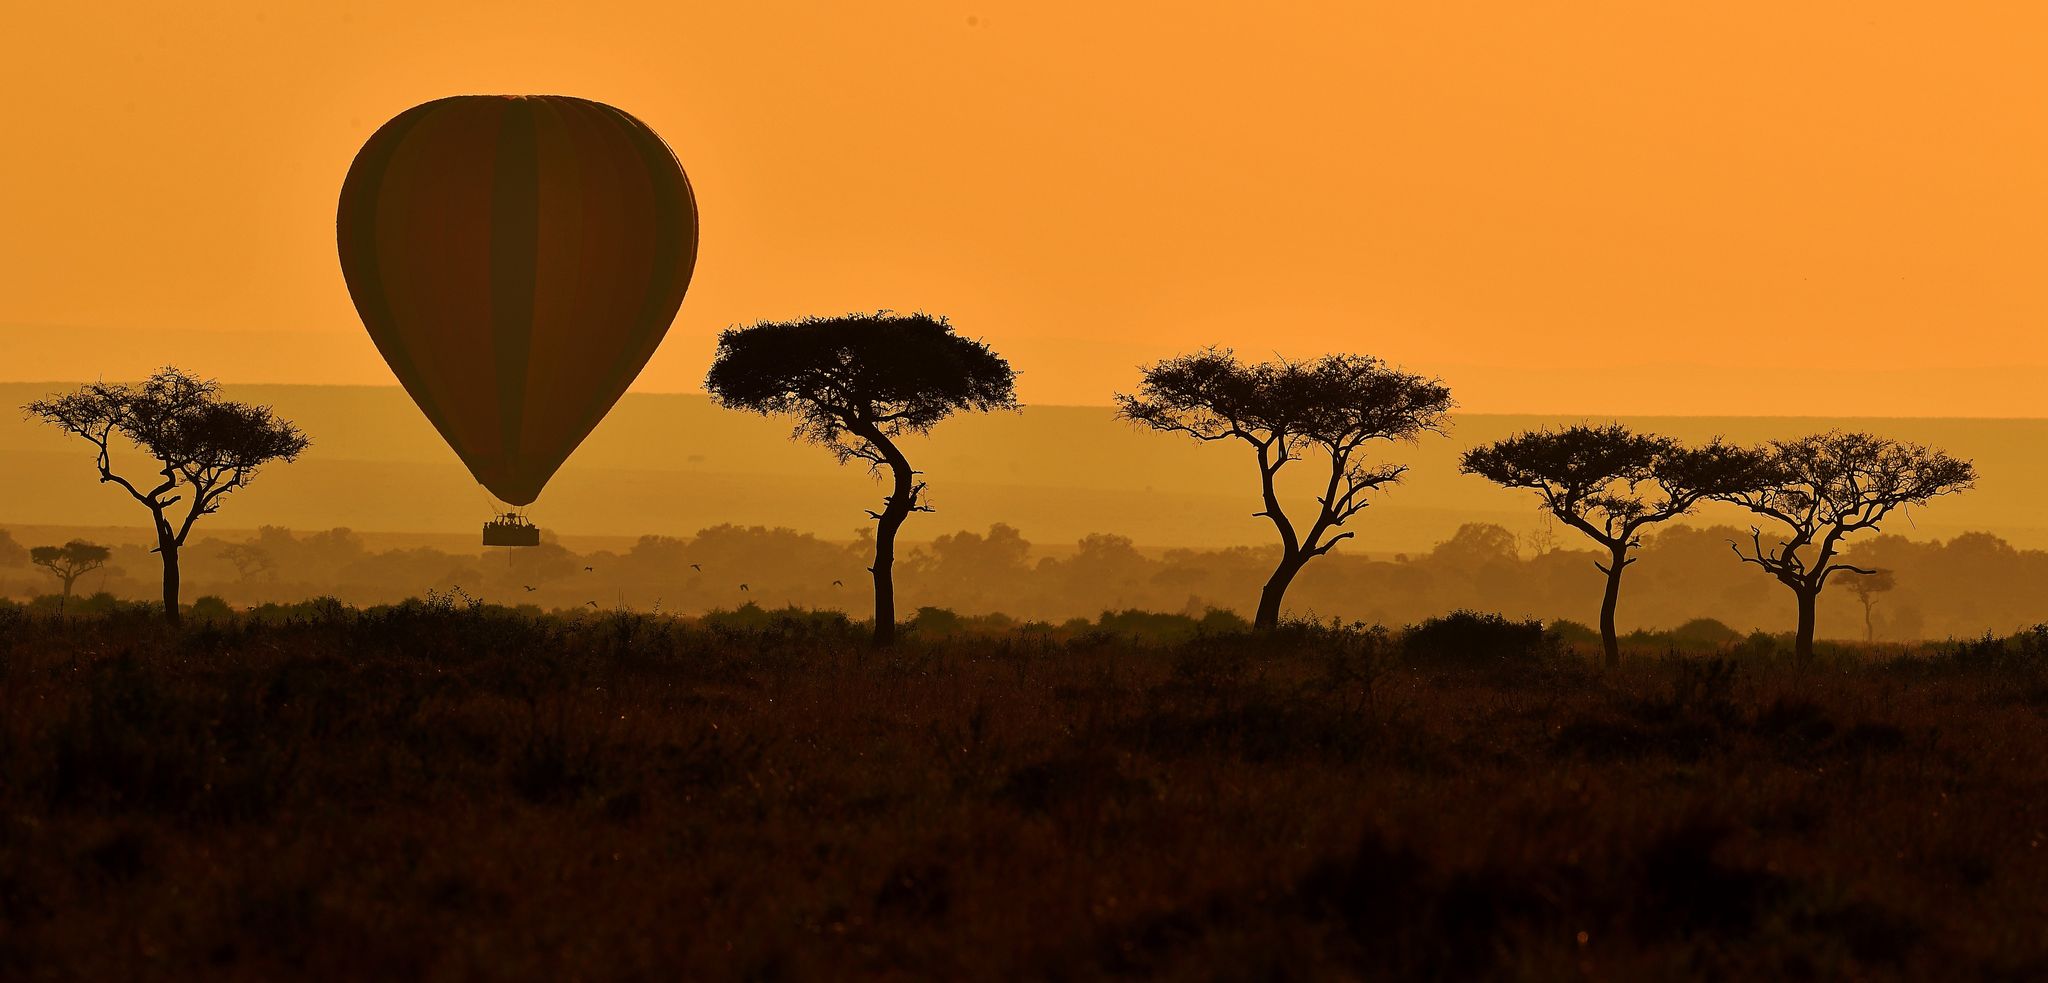 Hot air ballooning, Savanna, Sky, Natural environment, Wildlife, Tree, Safari, Hot air balloon, Natural landscape, Plain, 